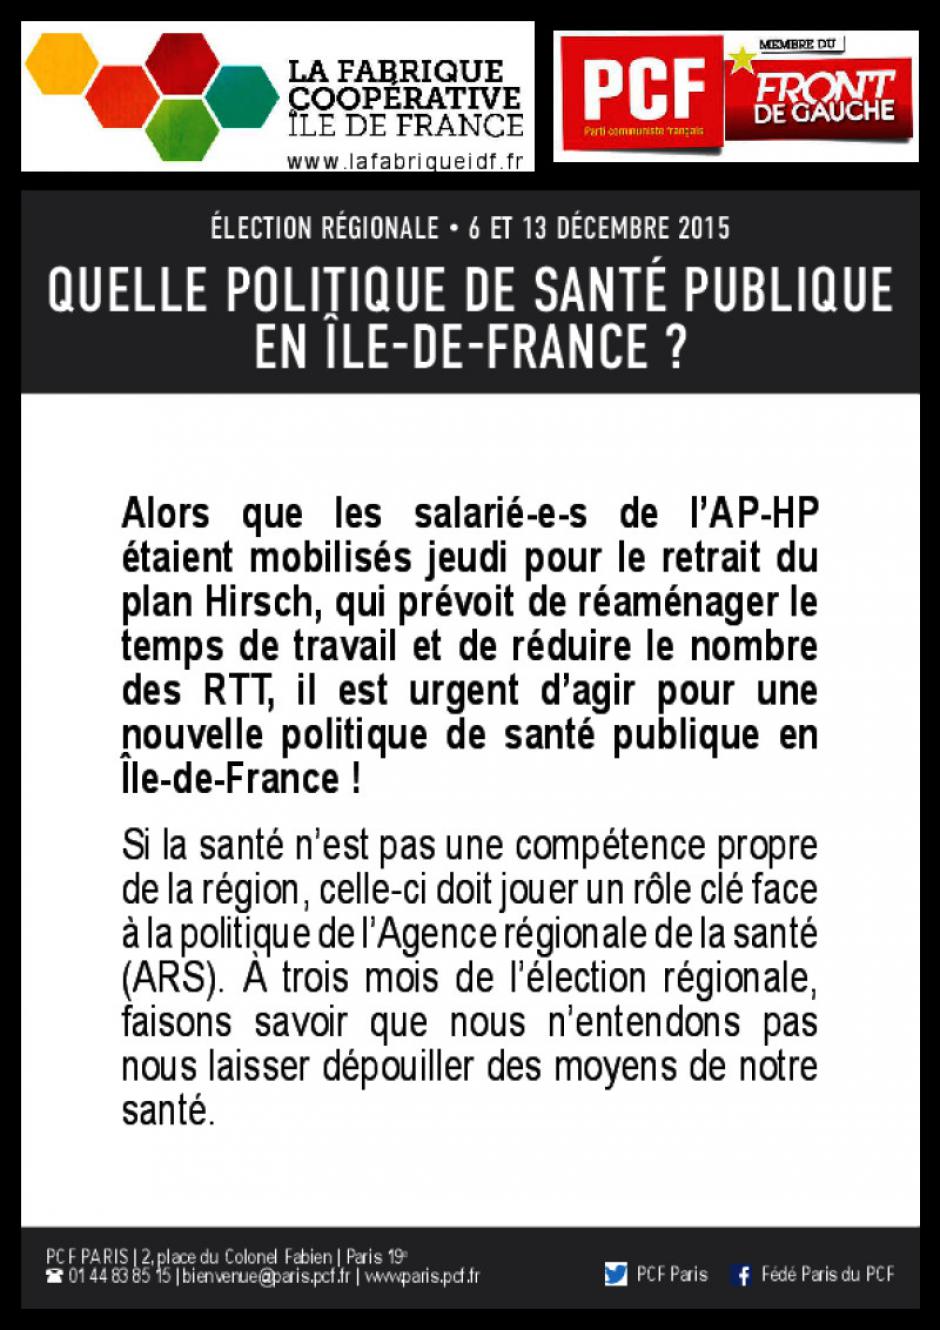 Quelle politique de santé publique en Ile-de-France ?